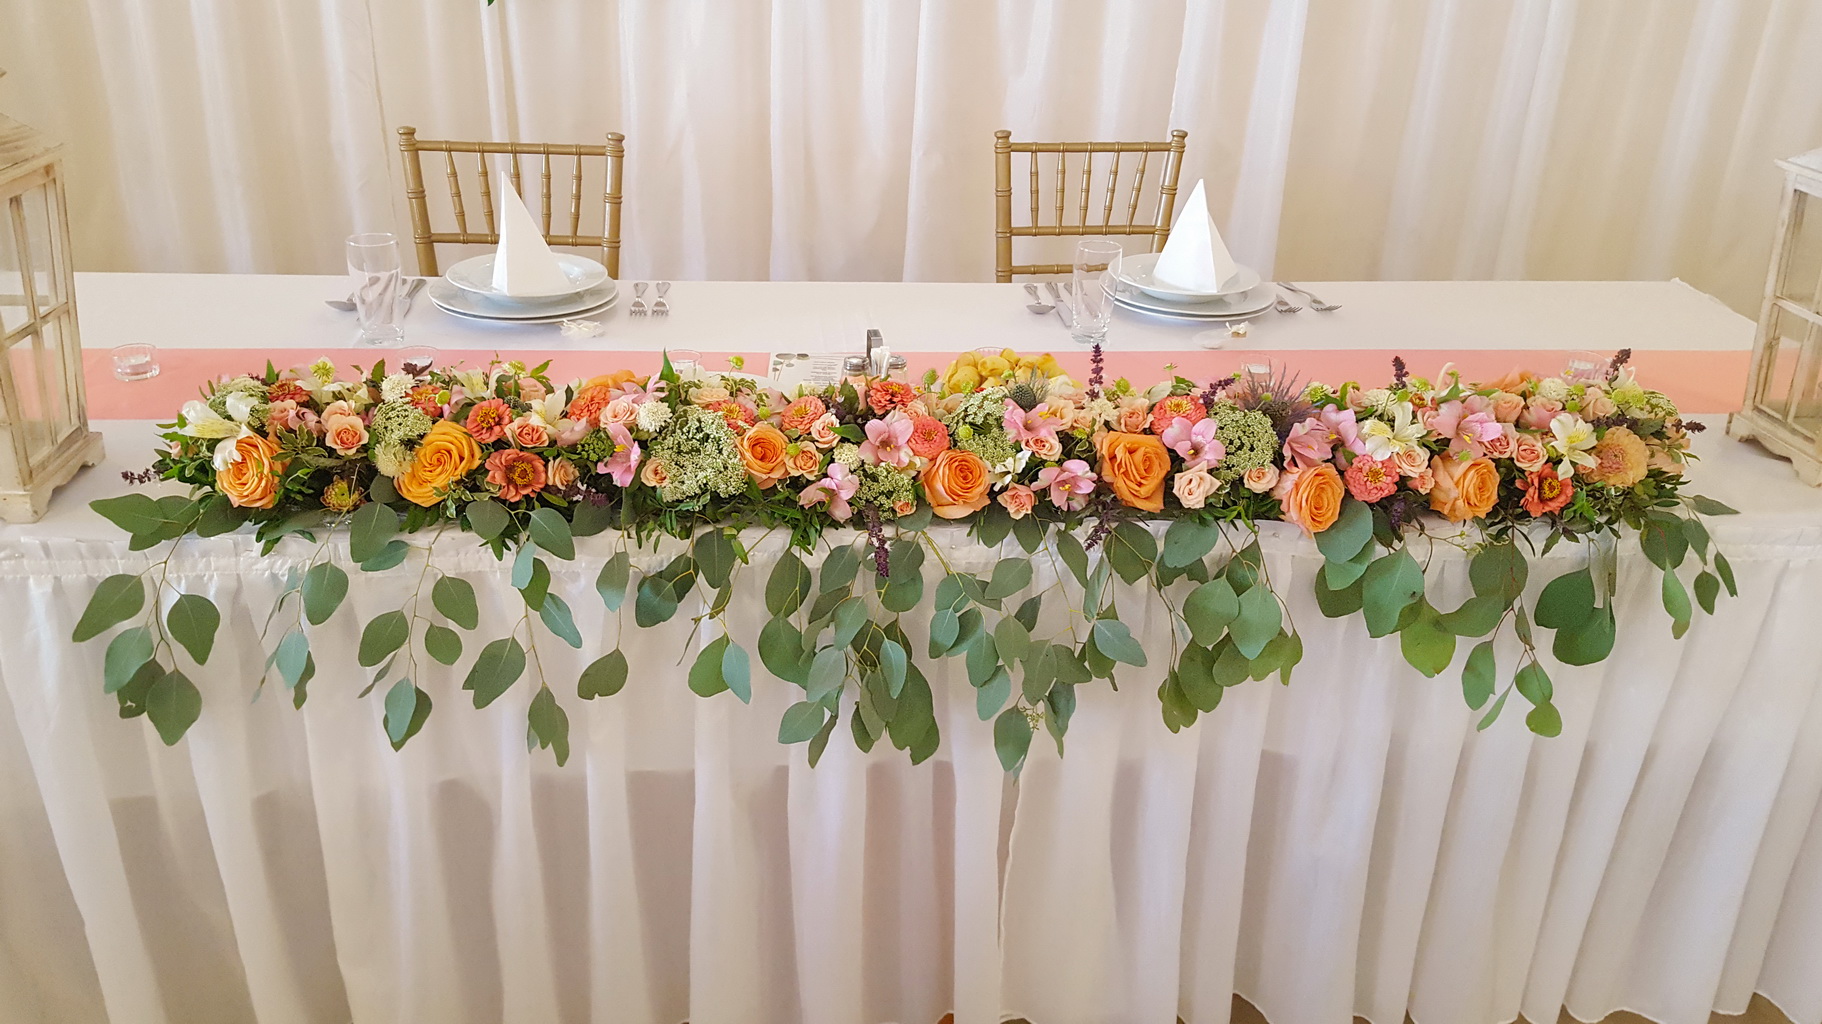 Főasztaldísz, Szent Anna Fogadó Berkenye (rózsa, inkaliliom, mezei virágok, barack, rózsaszín)